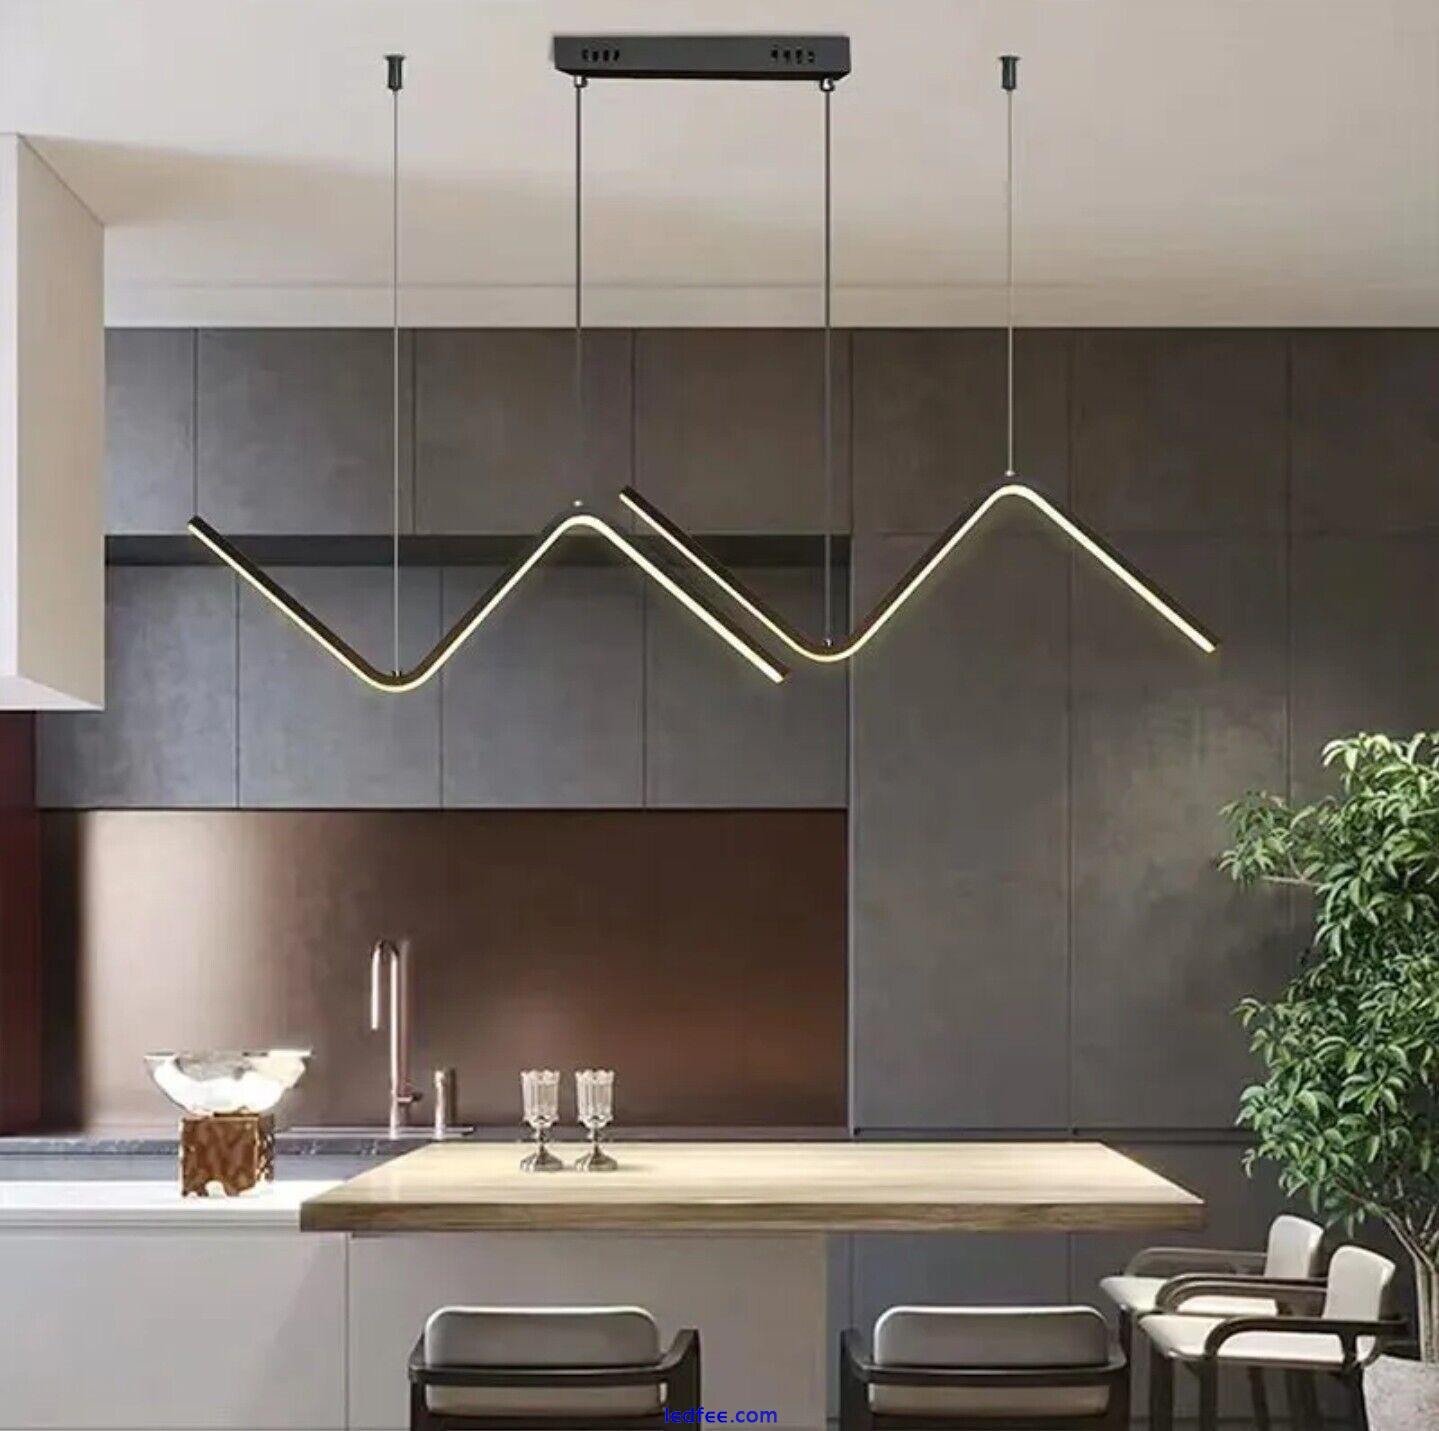 Modern Led Ceiling Chandelier for Table Dining Room Kitchen Bar Pendant Lighting 0 